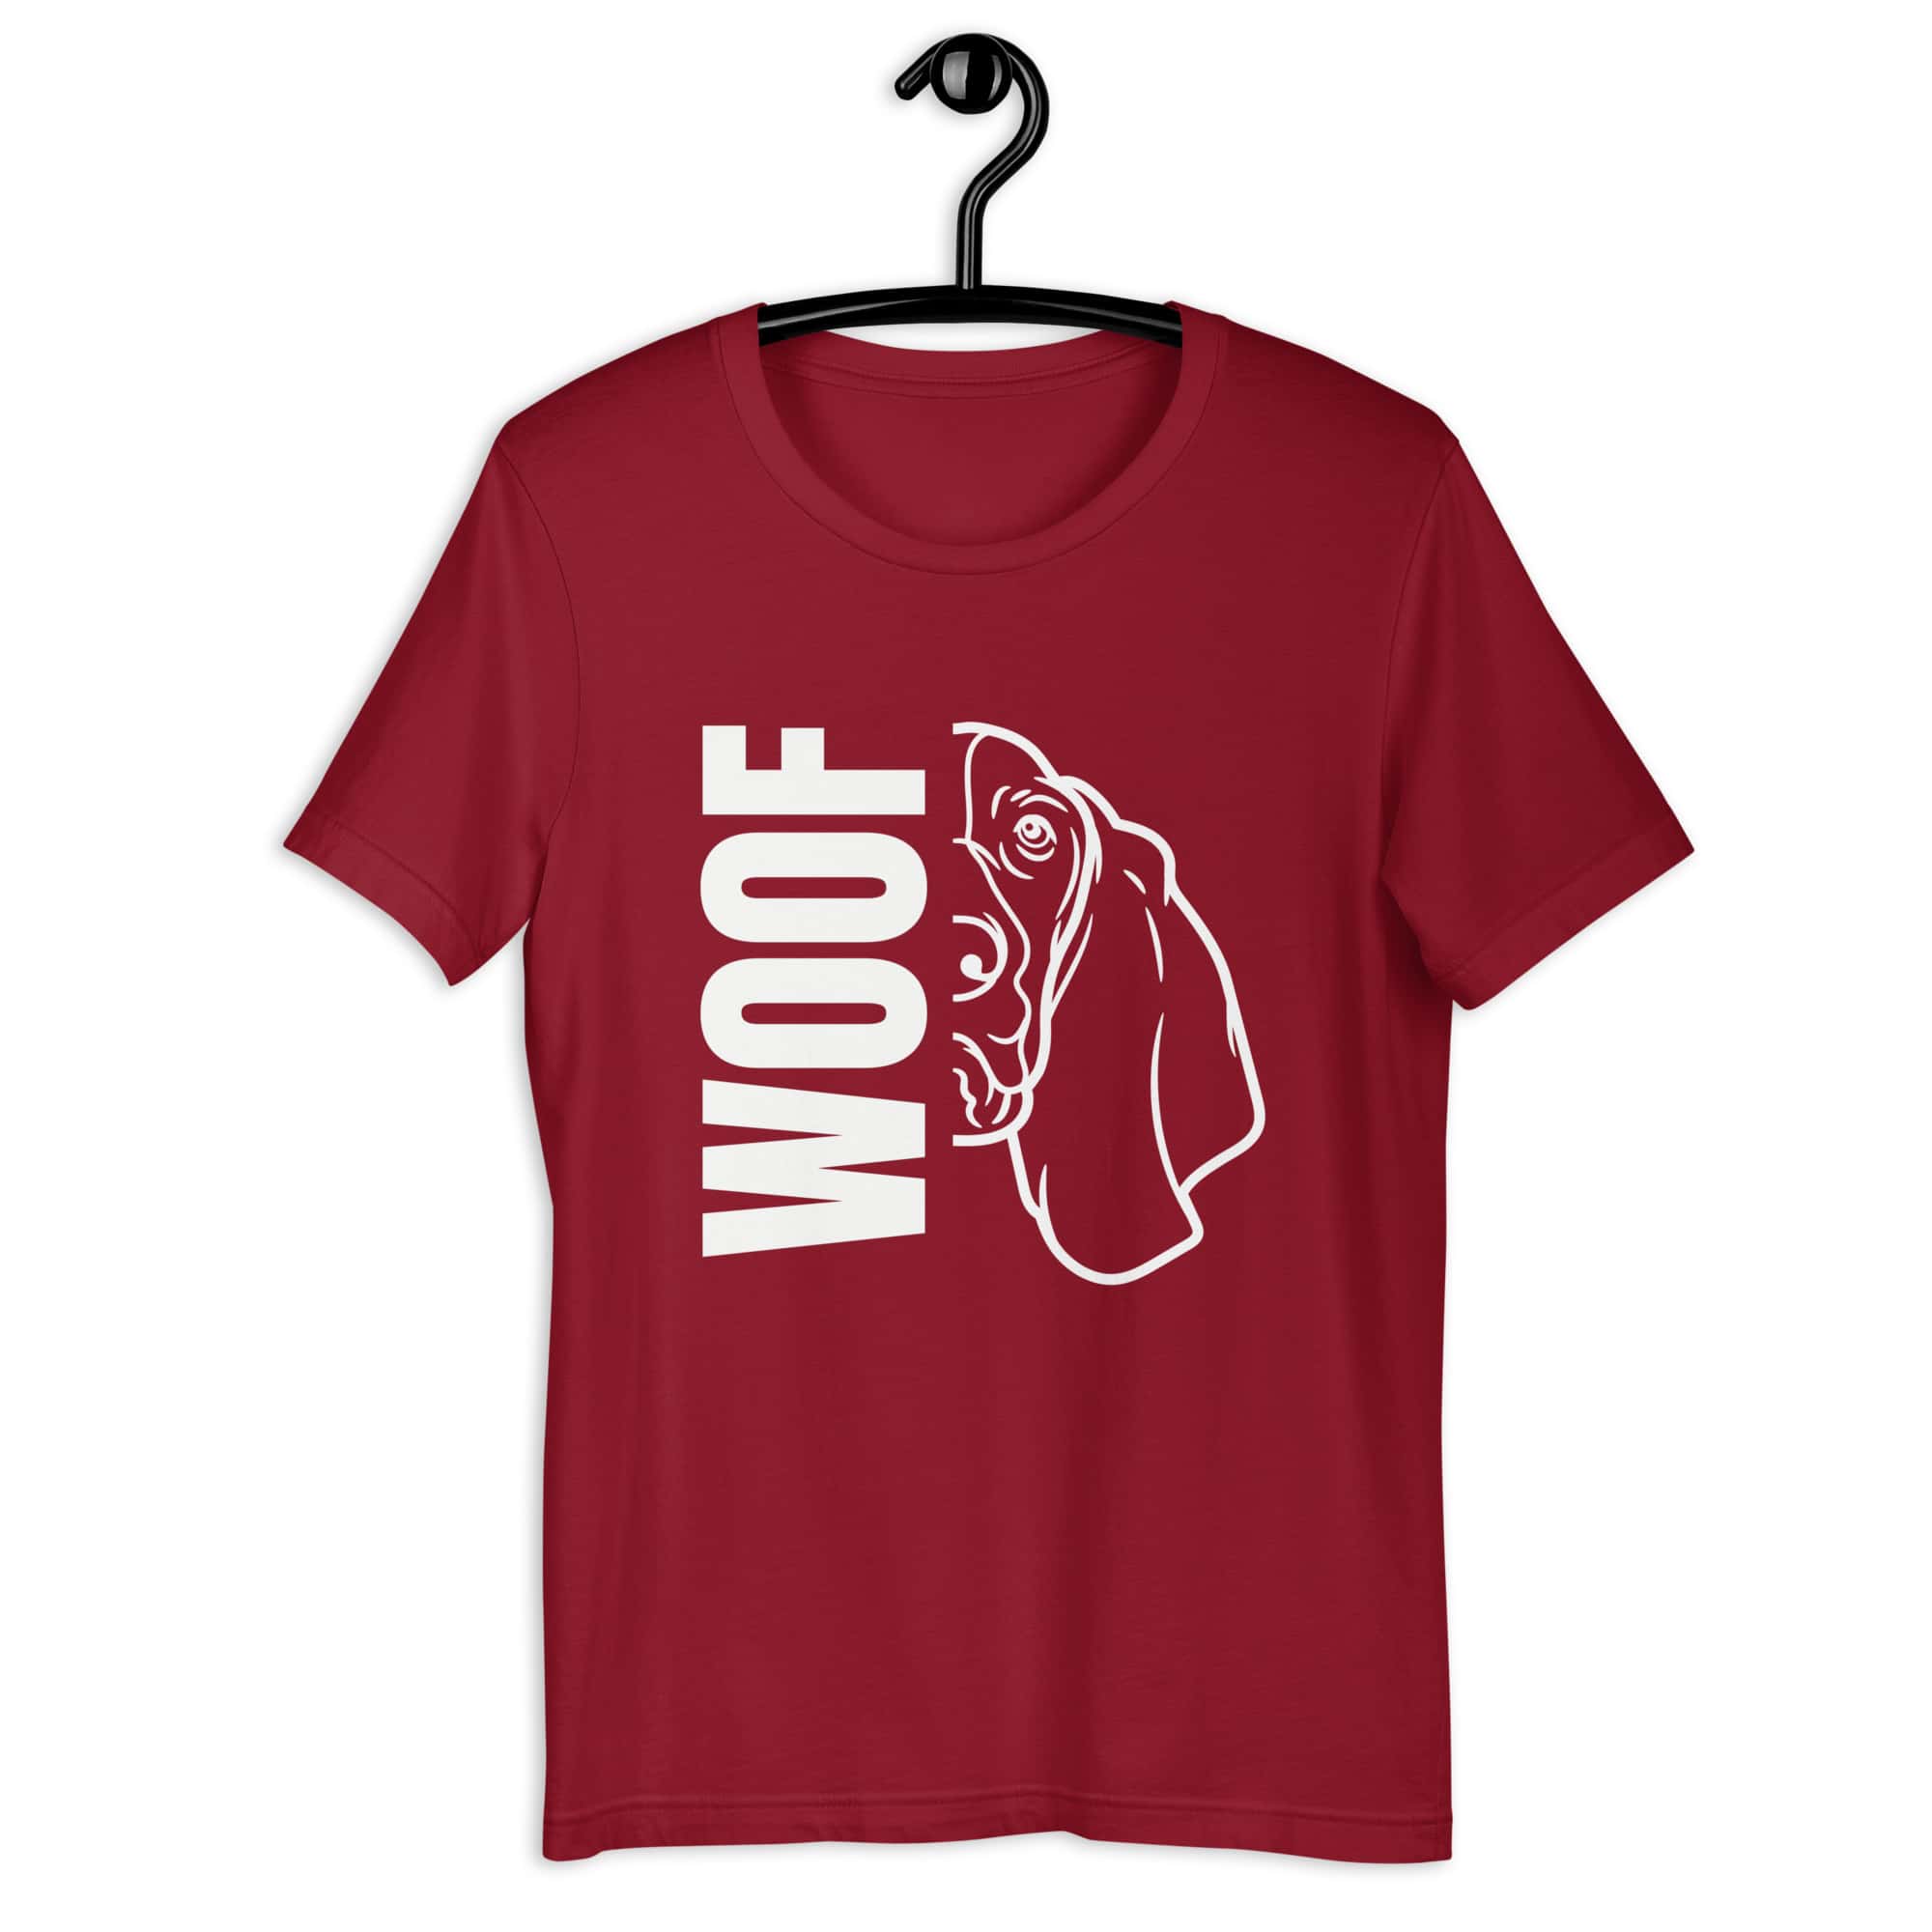 Woof Basset Hound Unisex T-Shirt maroon